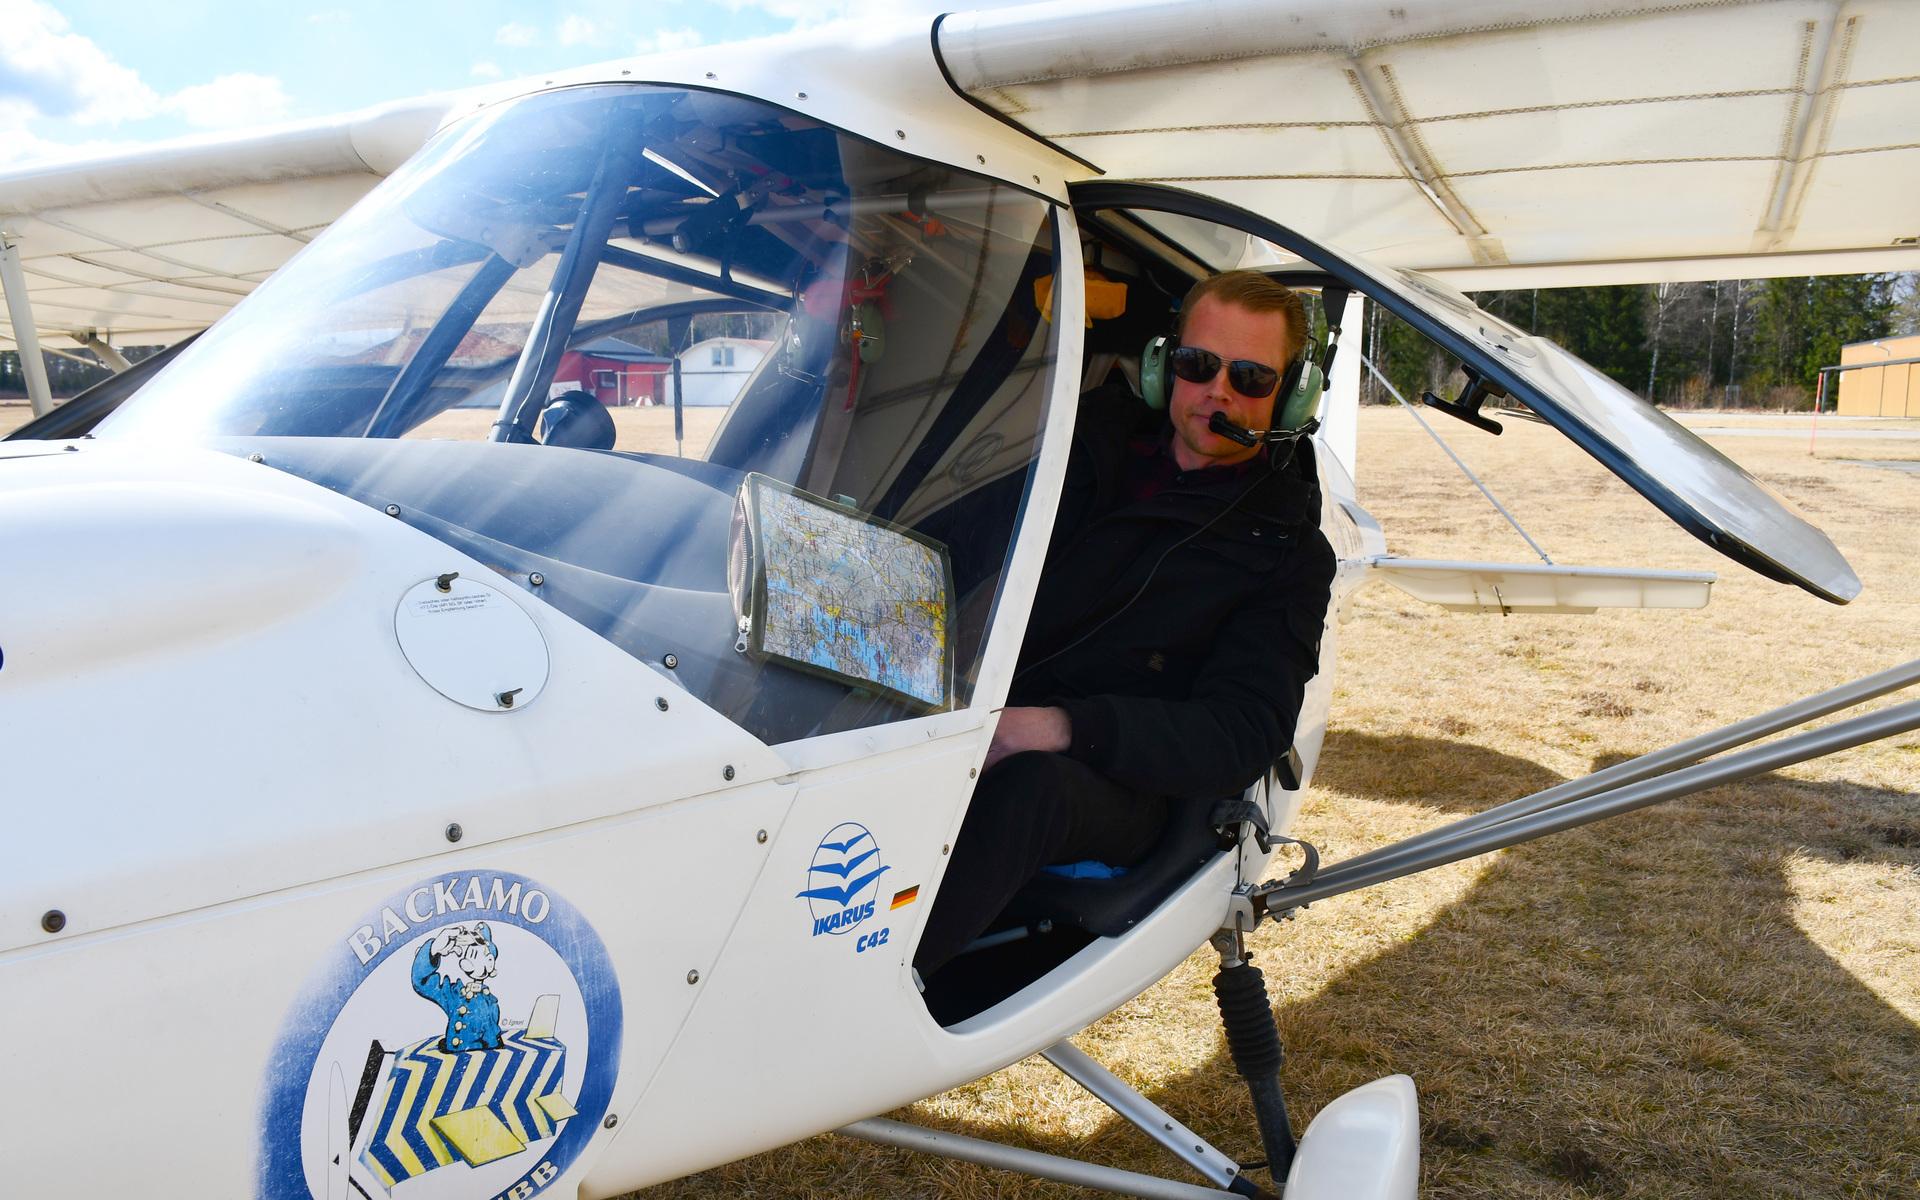 Thomas Björk sökte sig till Backamo flygklubb 2013, och tre intensiva månader senare hade han skaffat sig ett flygcertifikat. 